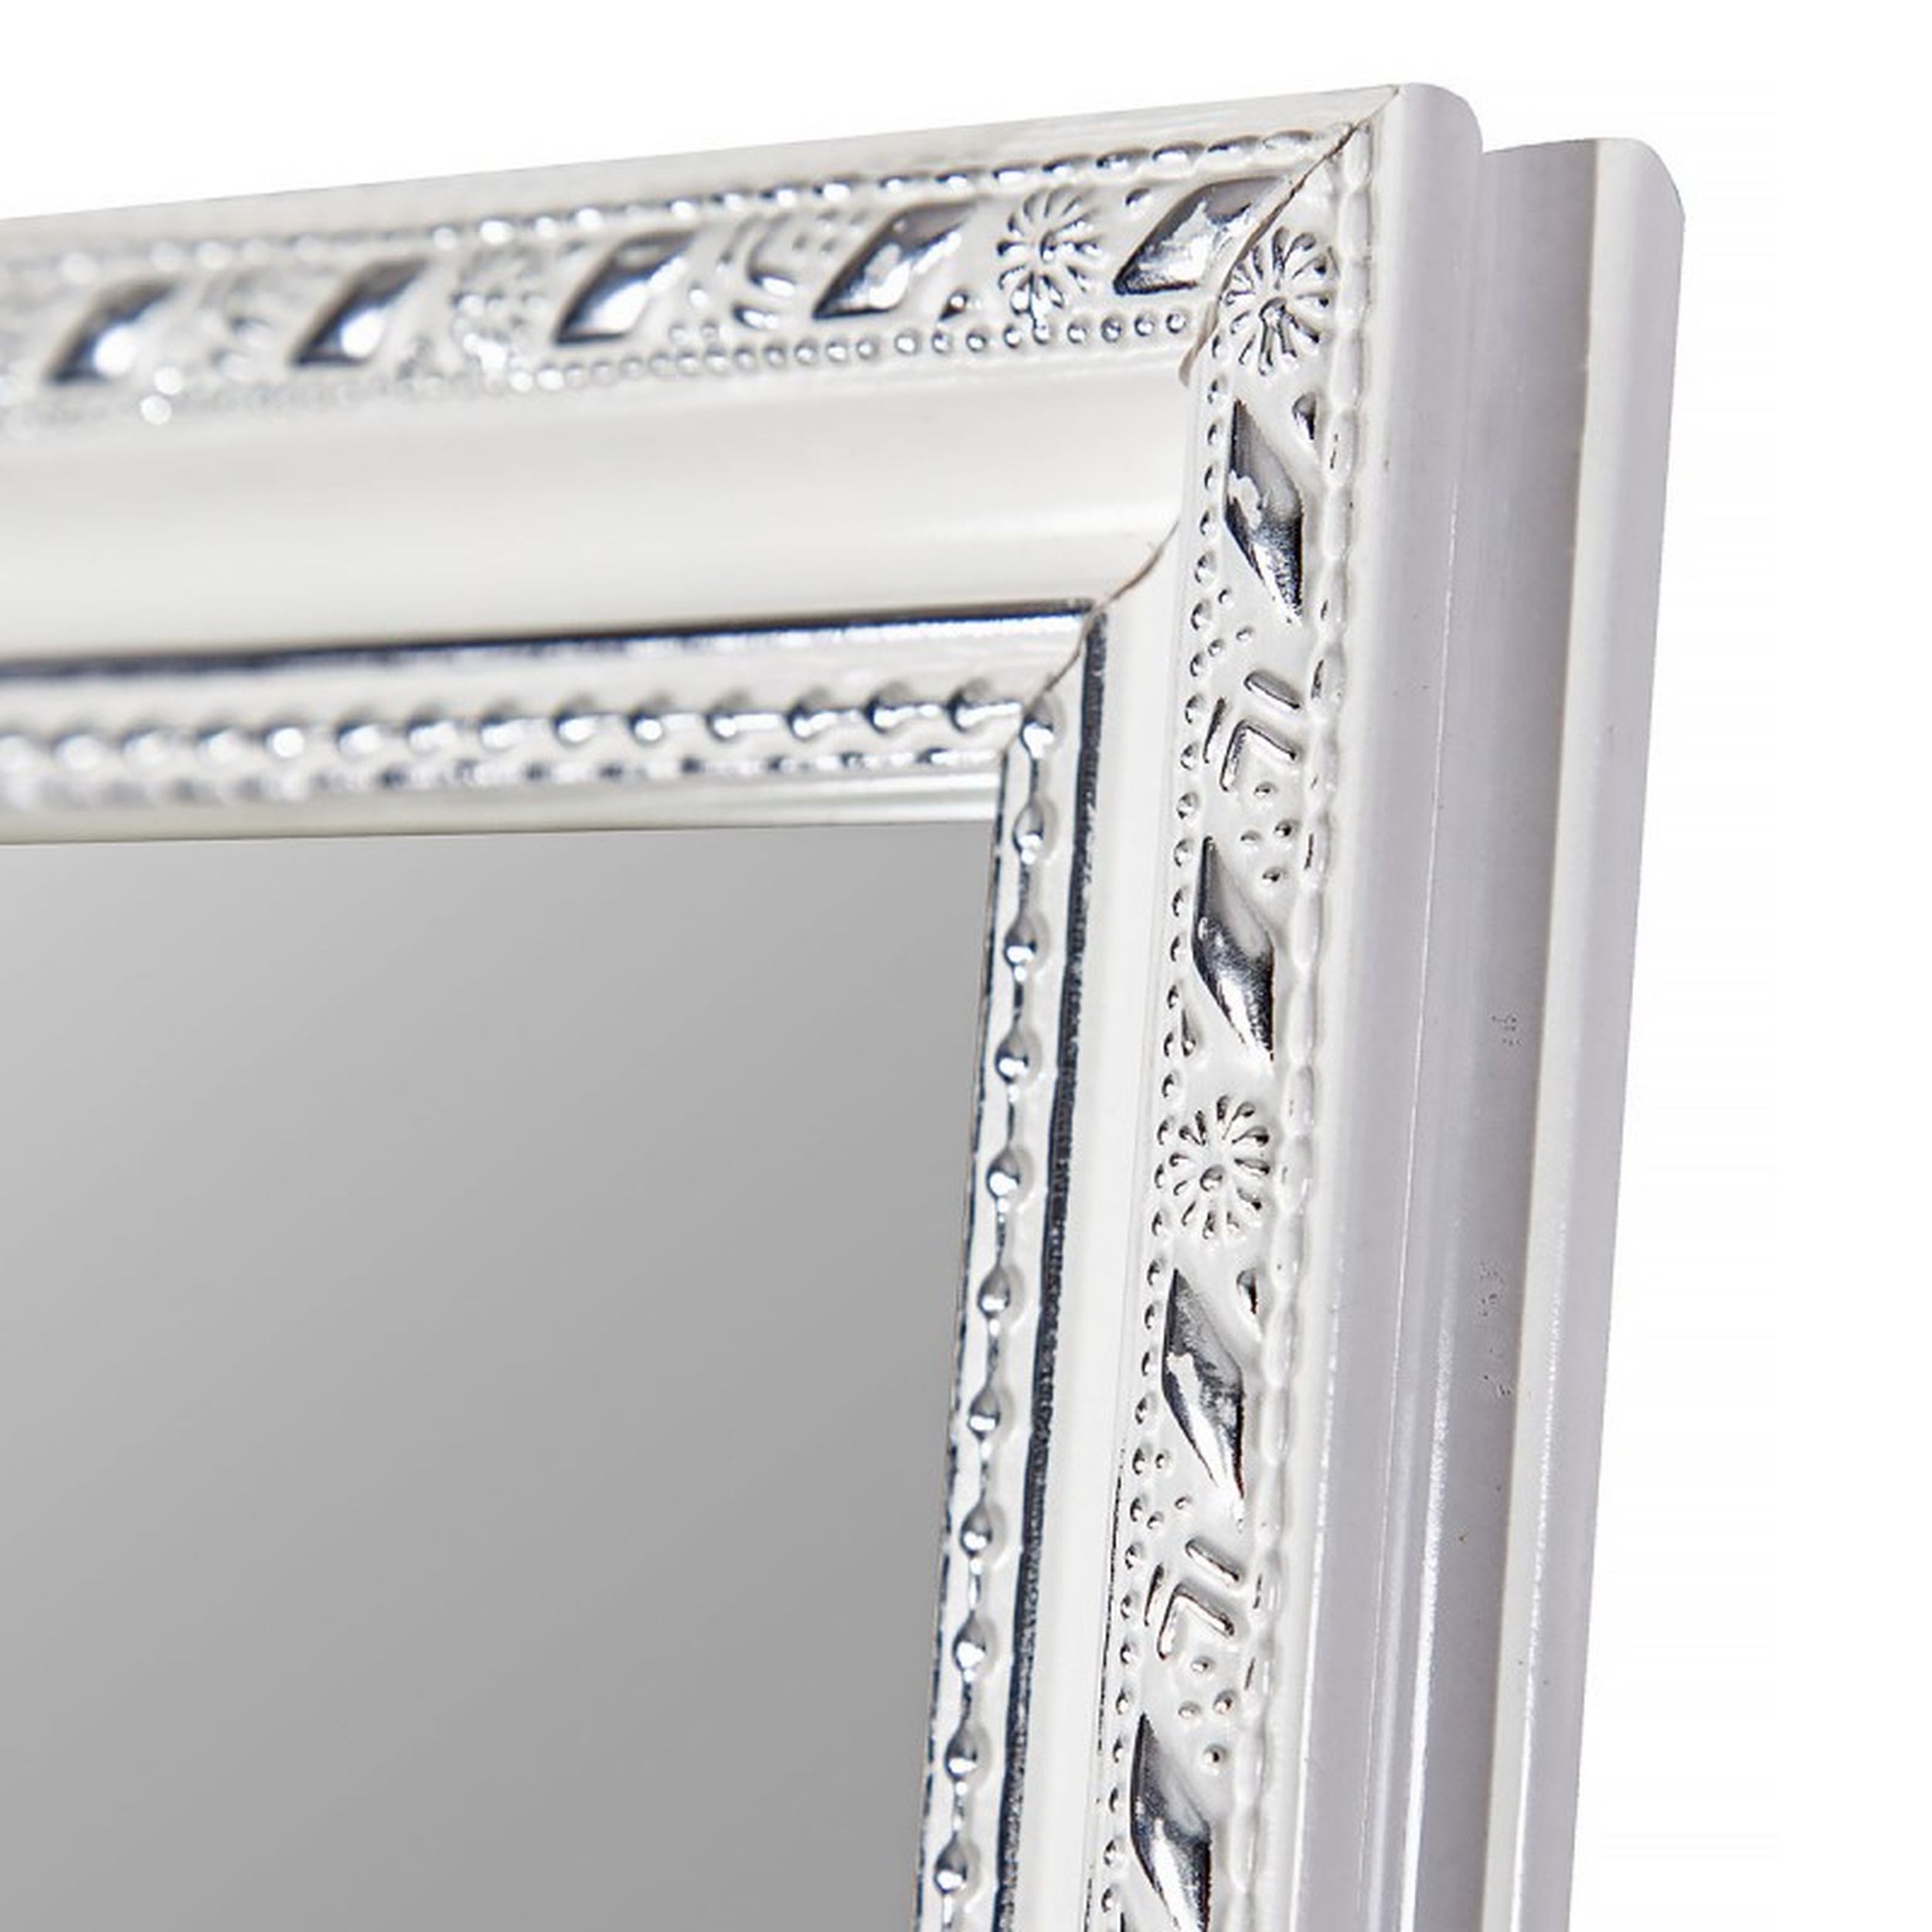 Rahmenspiegel 35x125cm  LISA